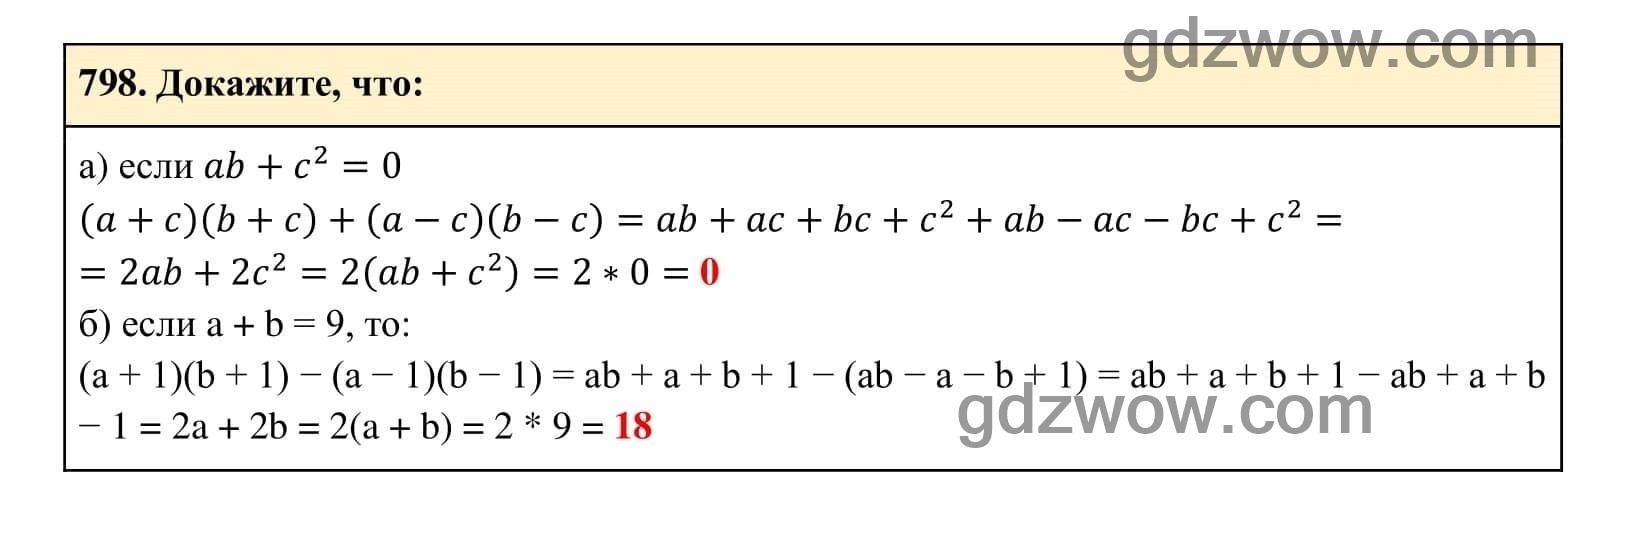 Упражнение 798 - ГДЗ по Алгебре 7 класс Учебник Макарычев (решебник) - GDZwow